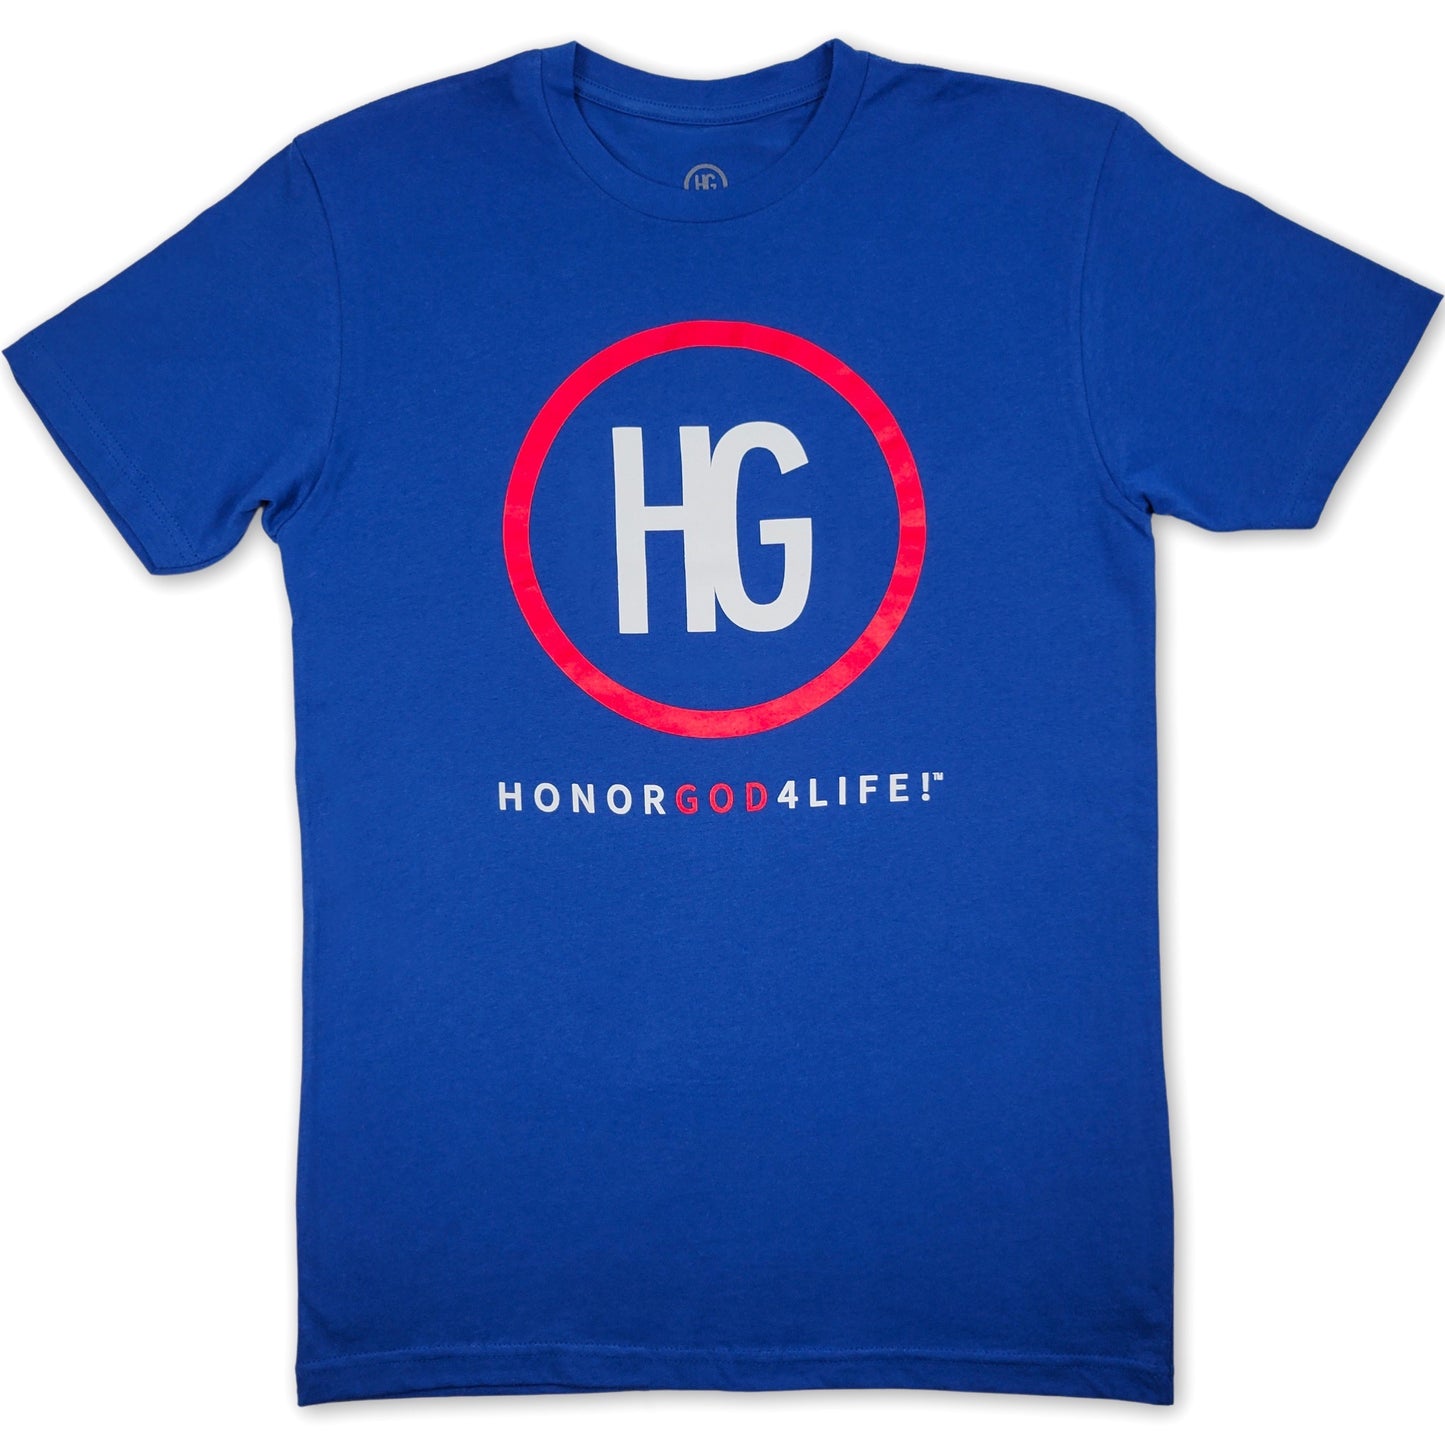 HG Original Super Blue